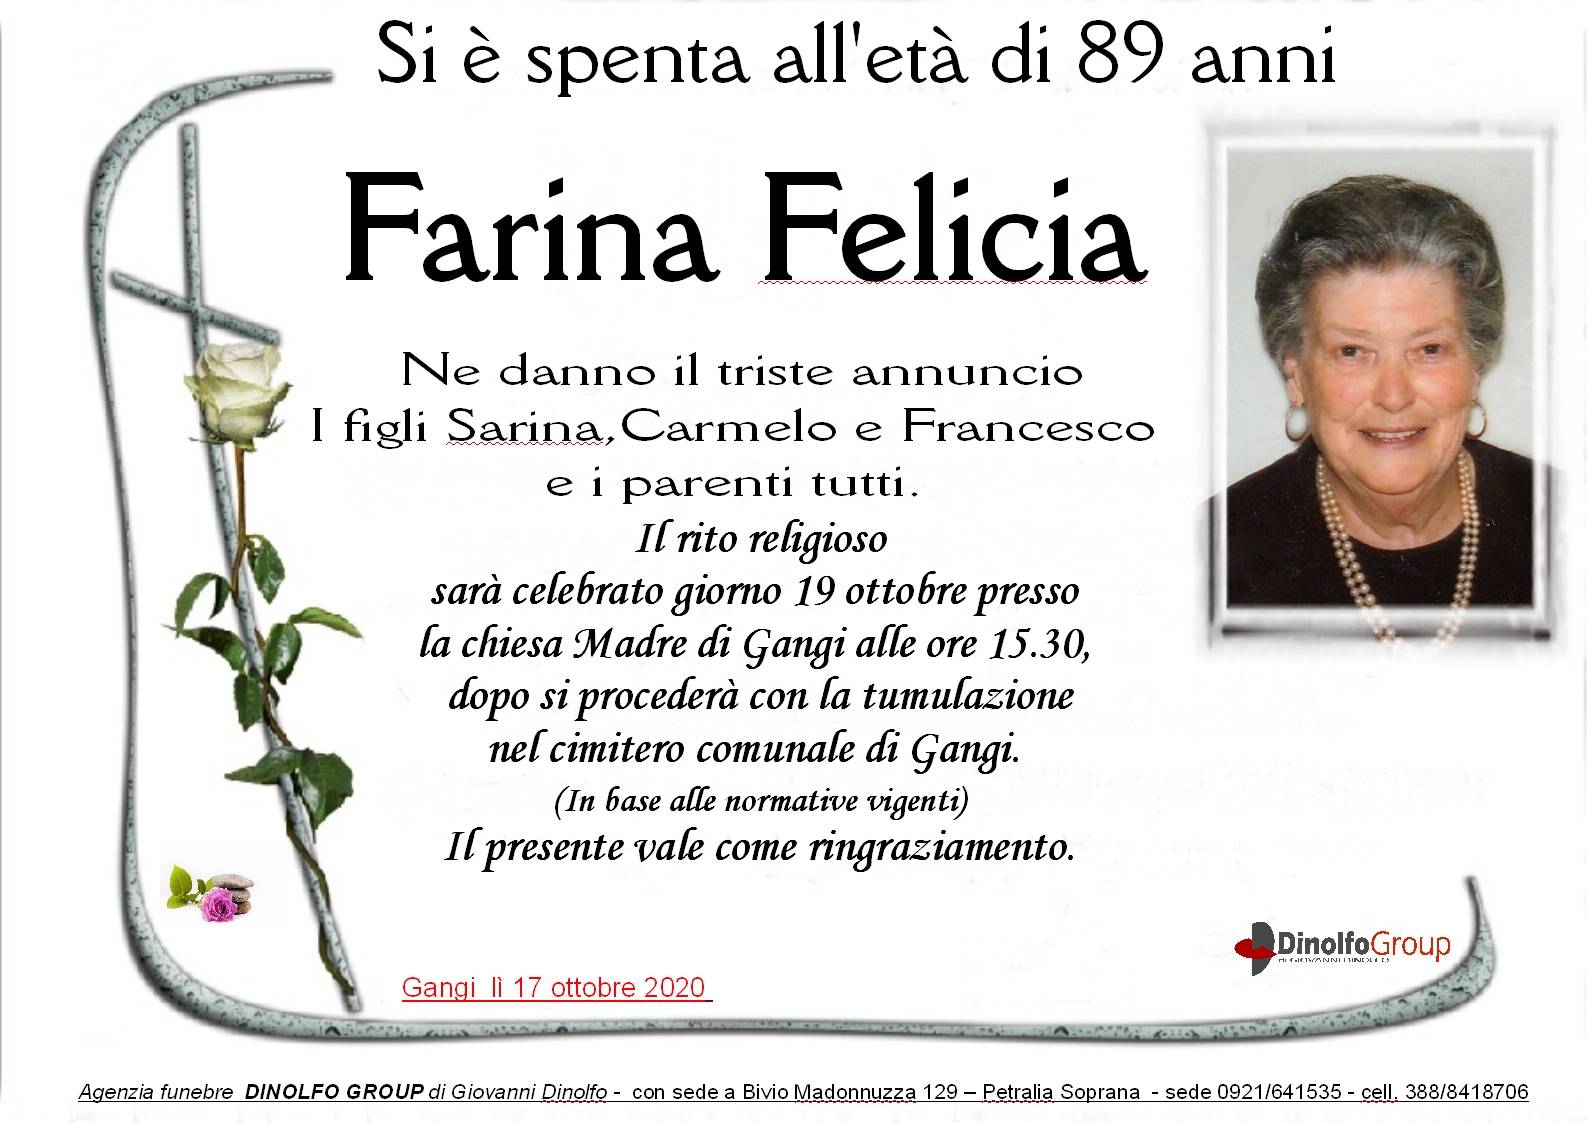 Felicia Farina